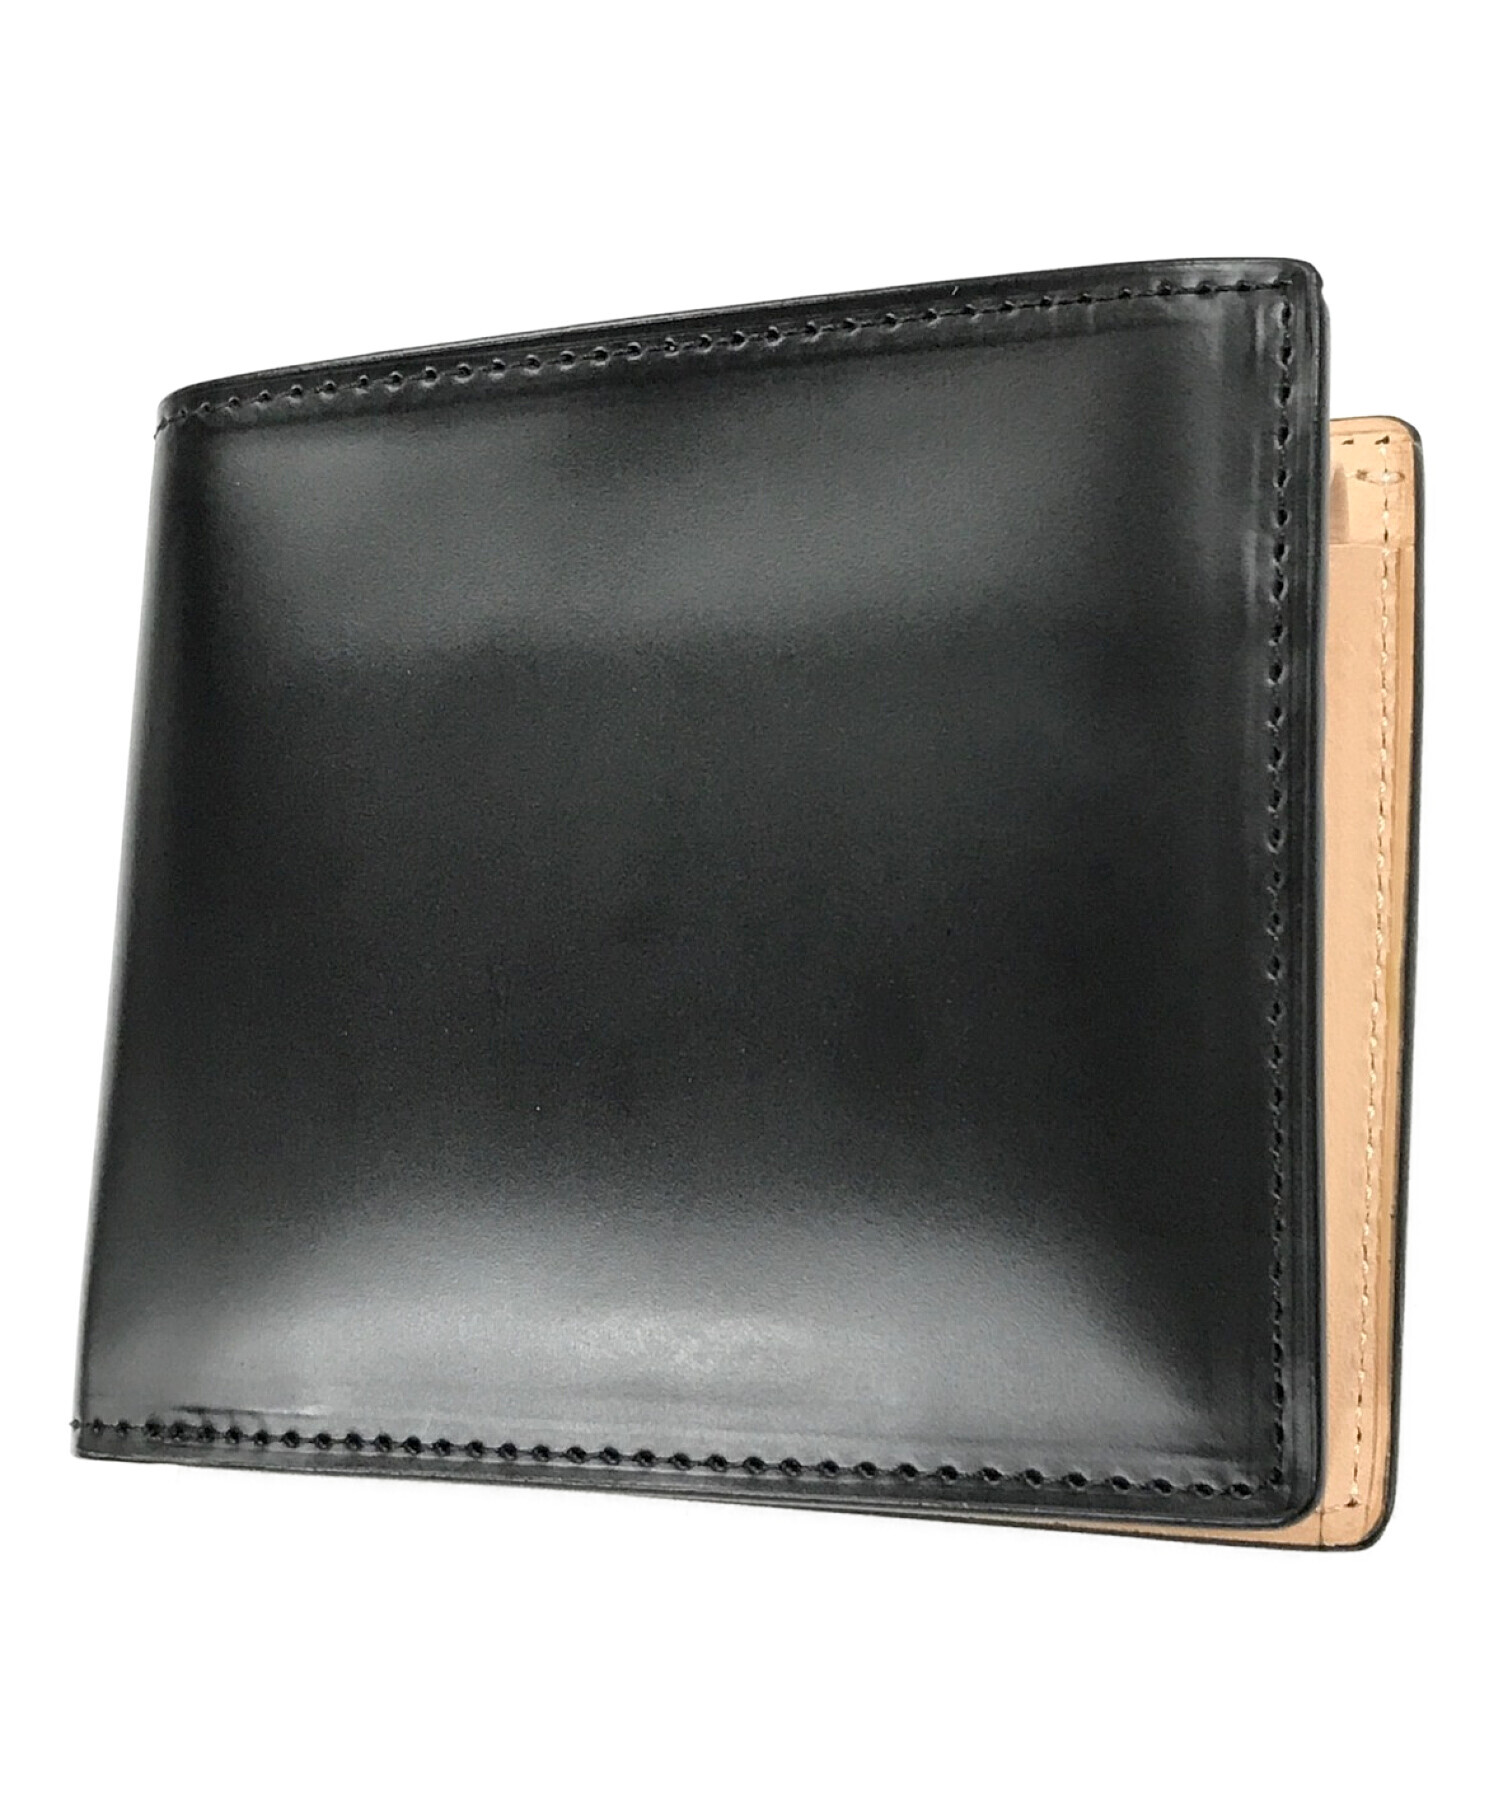 cocomeister (ココマイスター) 2つ折り財布 ブラック サイズ:実寸サイズにてご確認ください。